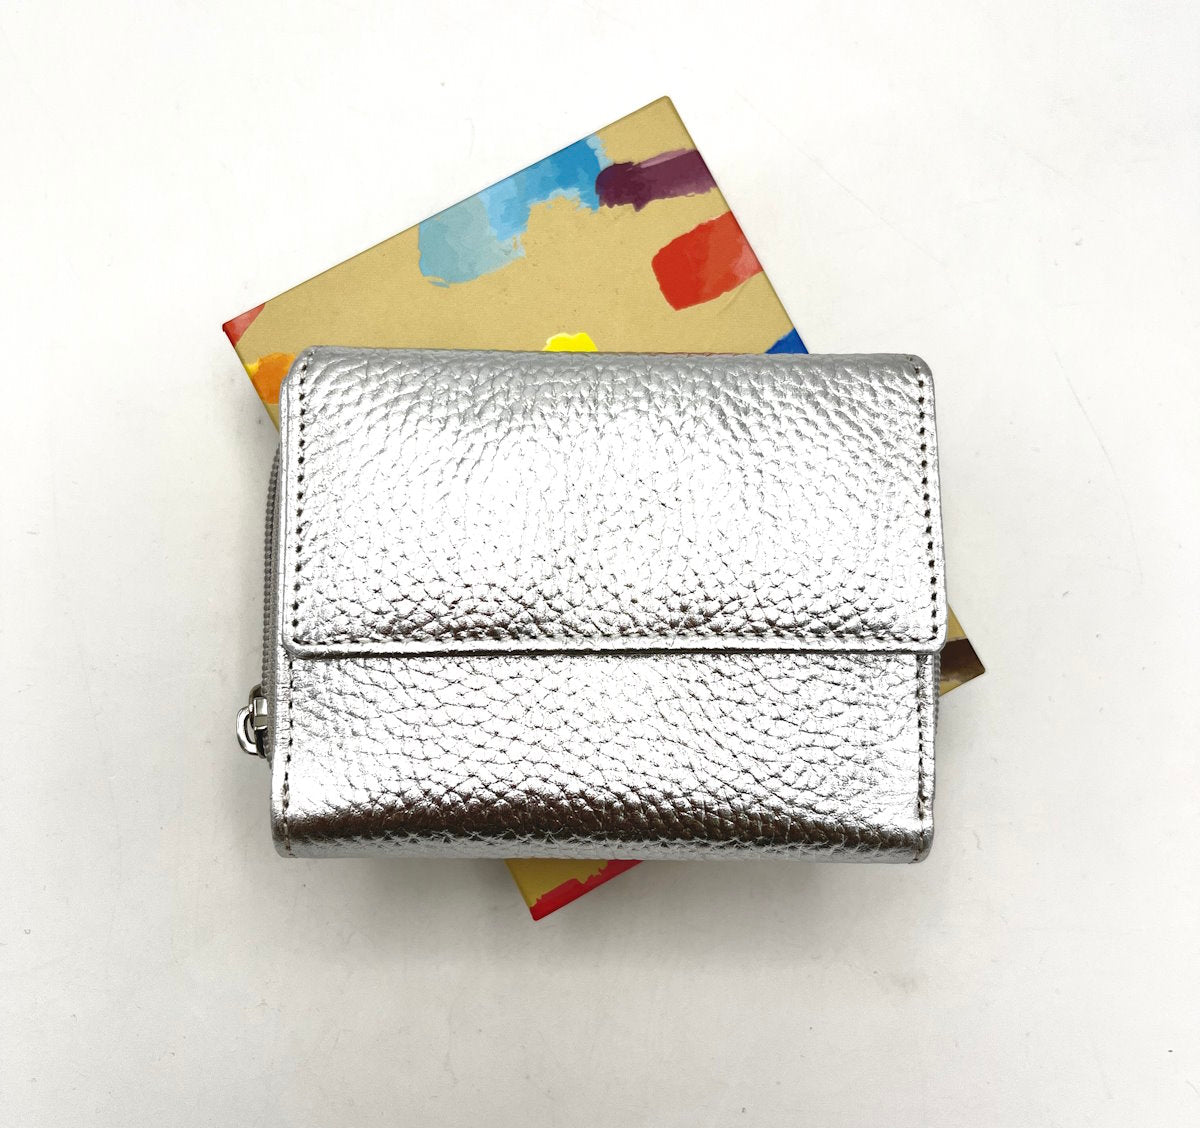 Genuine leather wallet, for women, art. PFD8.392